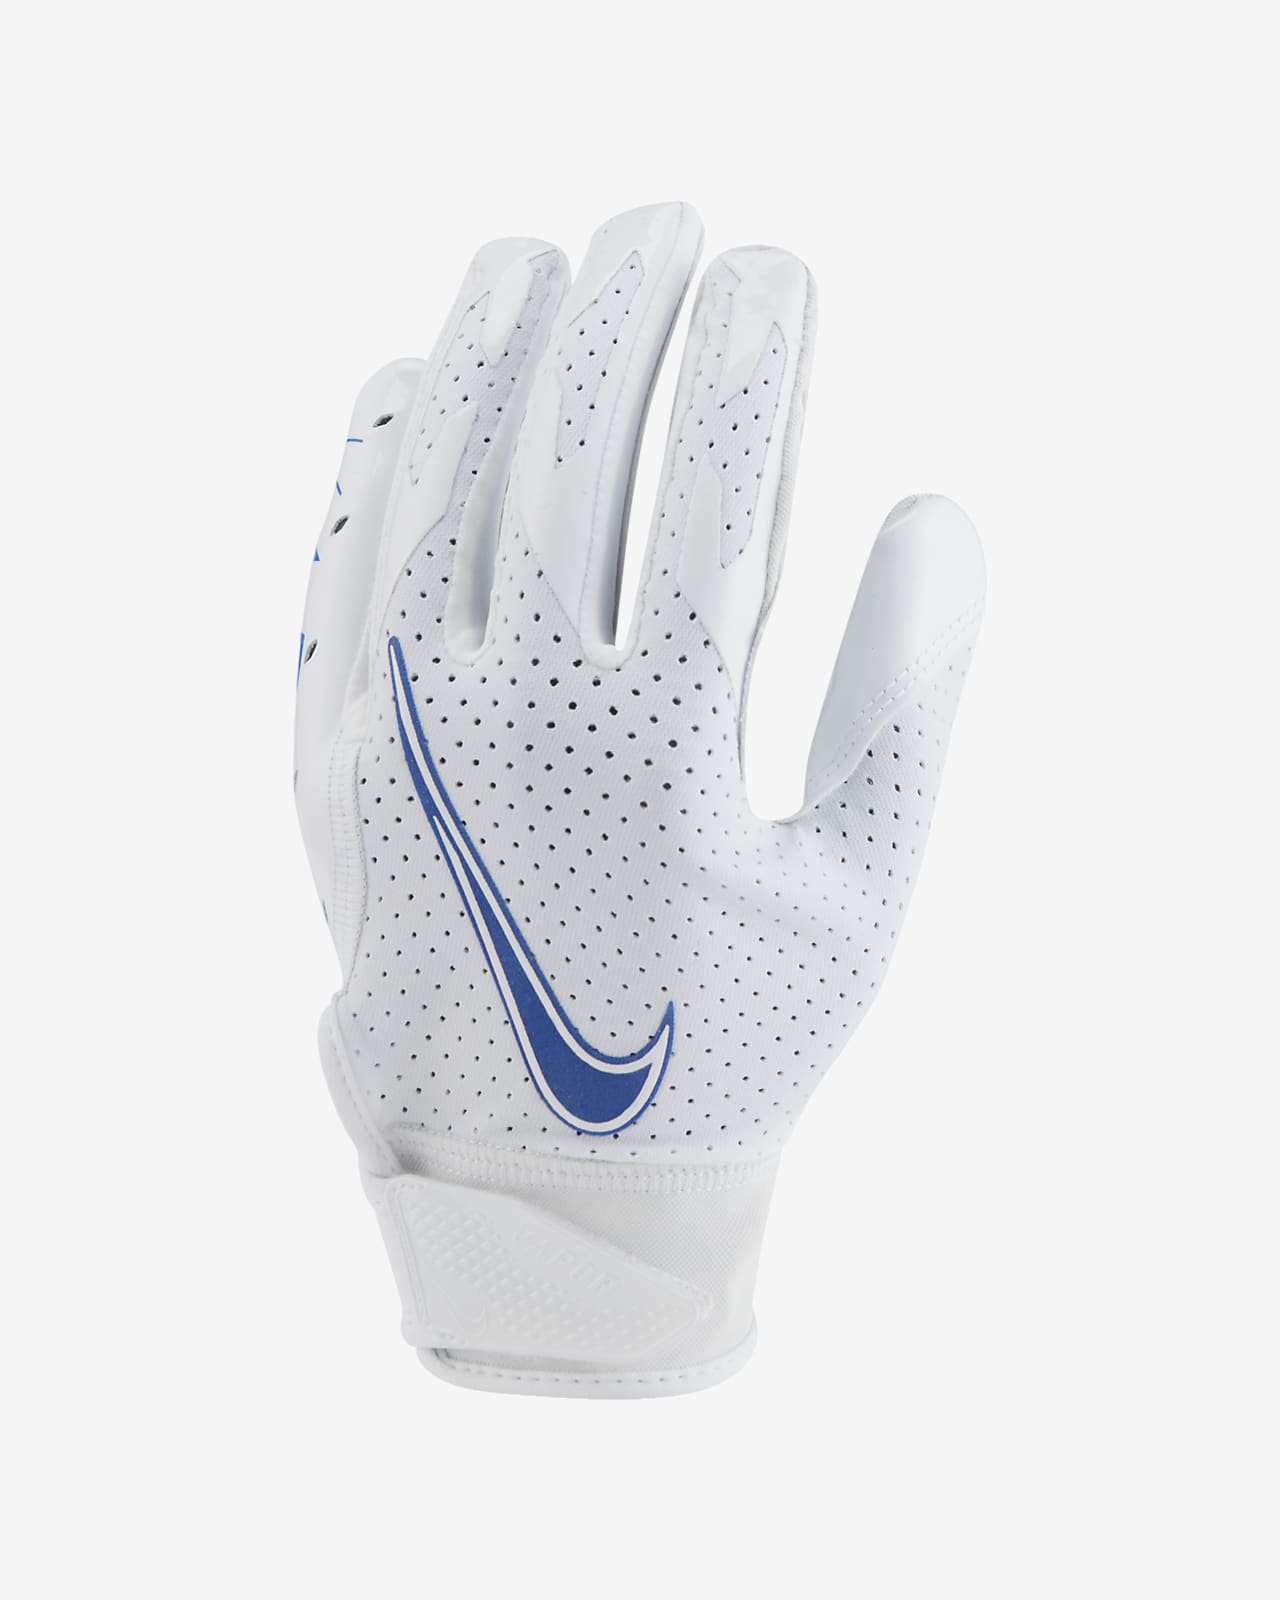 buy nike football gloves 